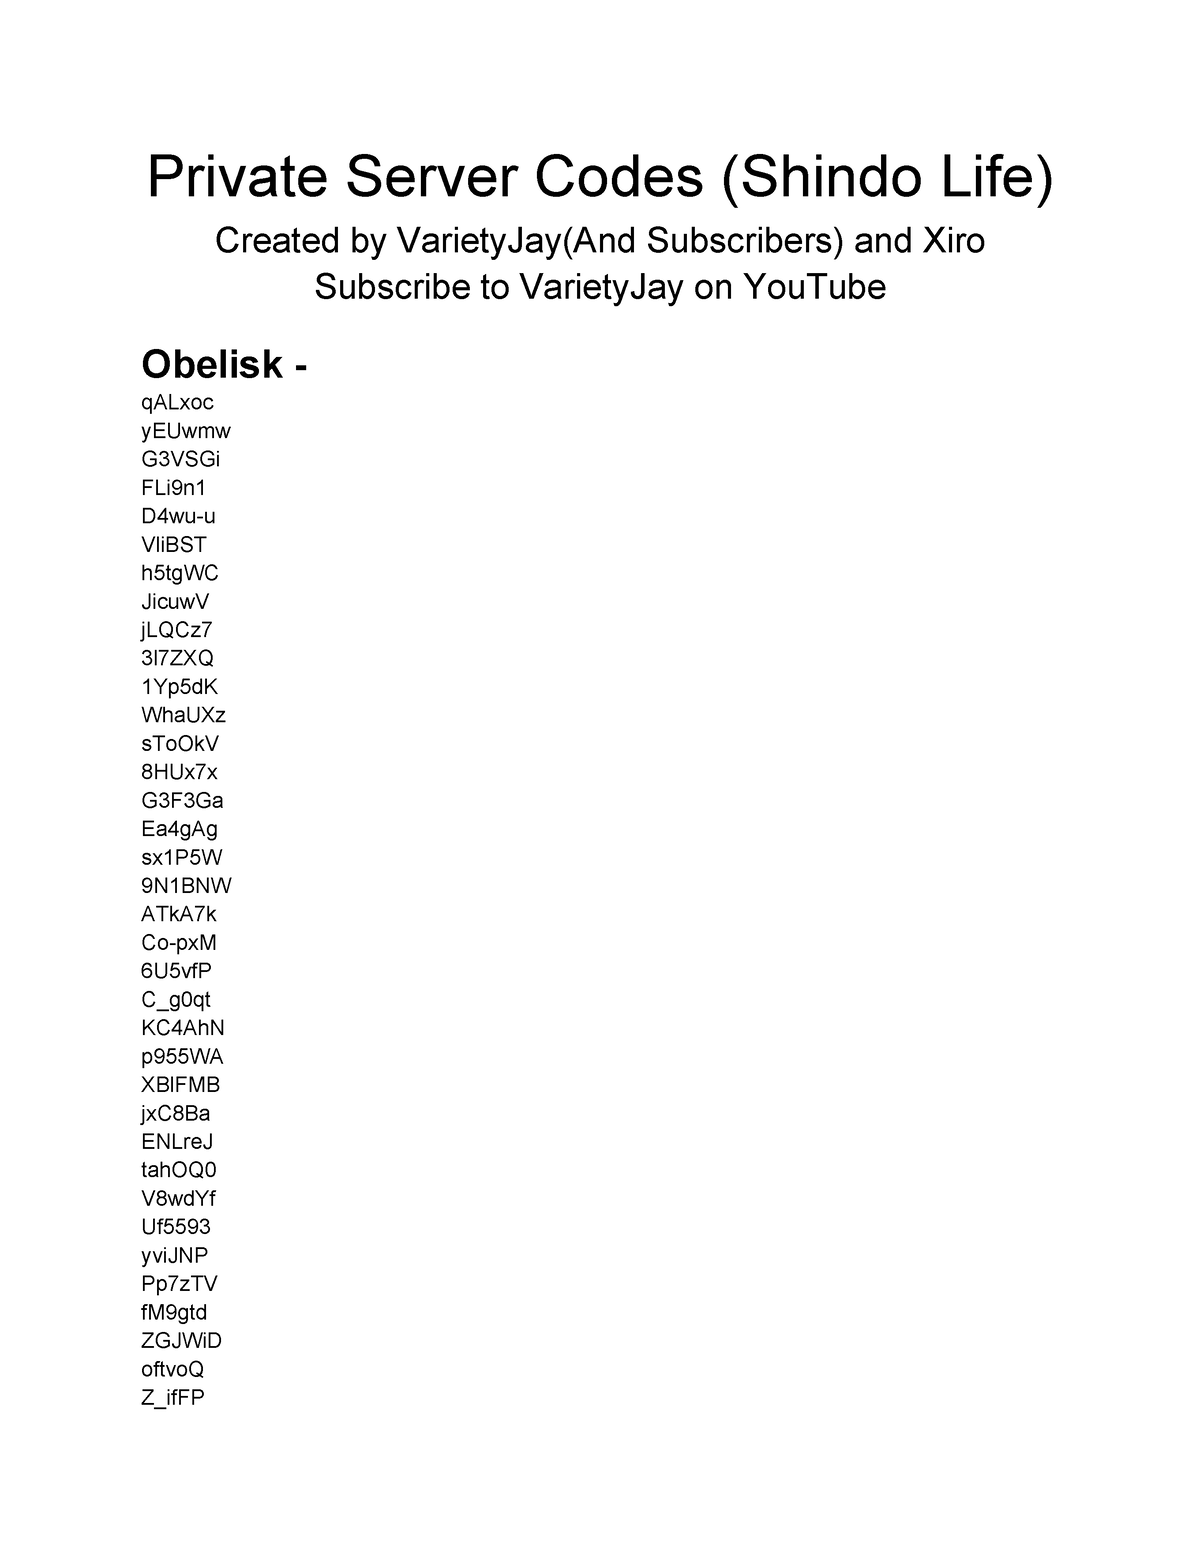 Shindo Life Private Server Codes.